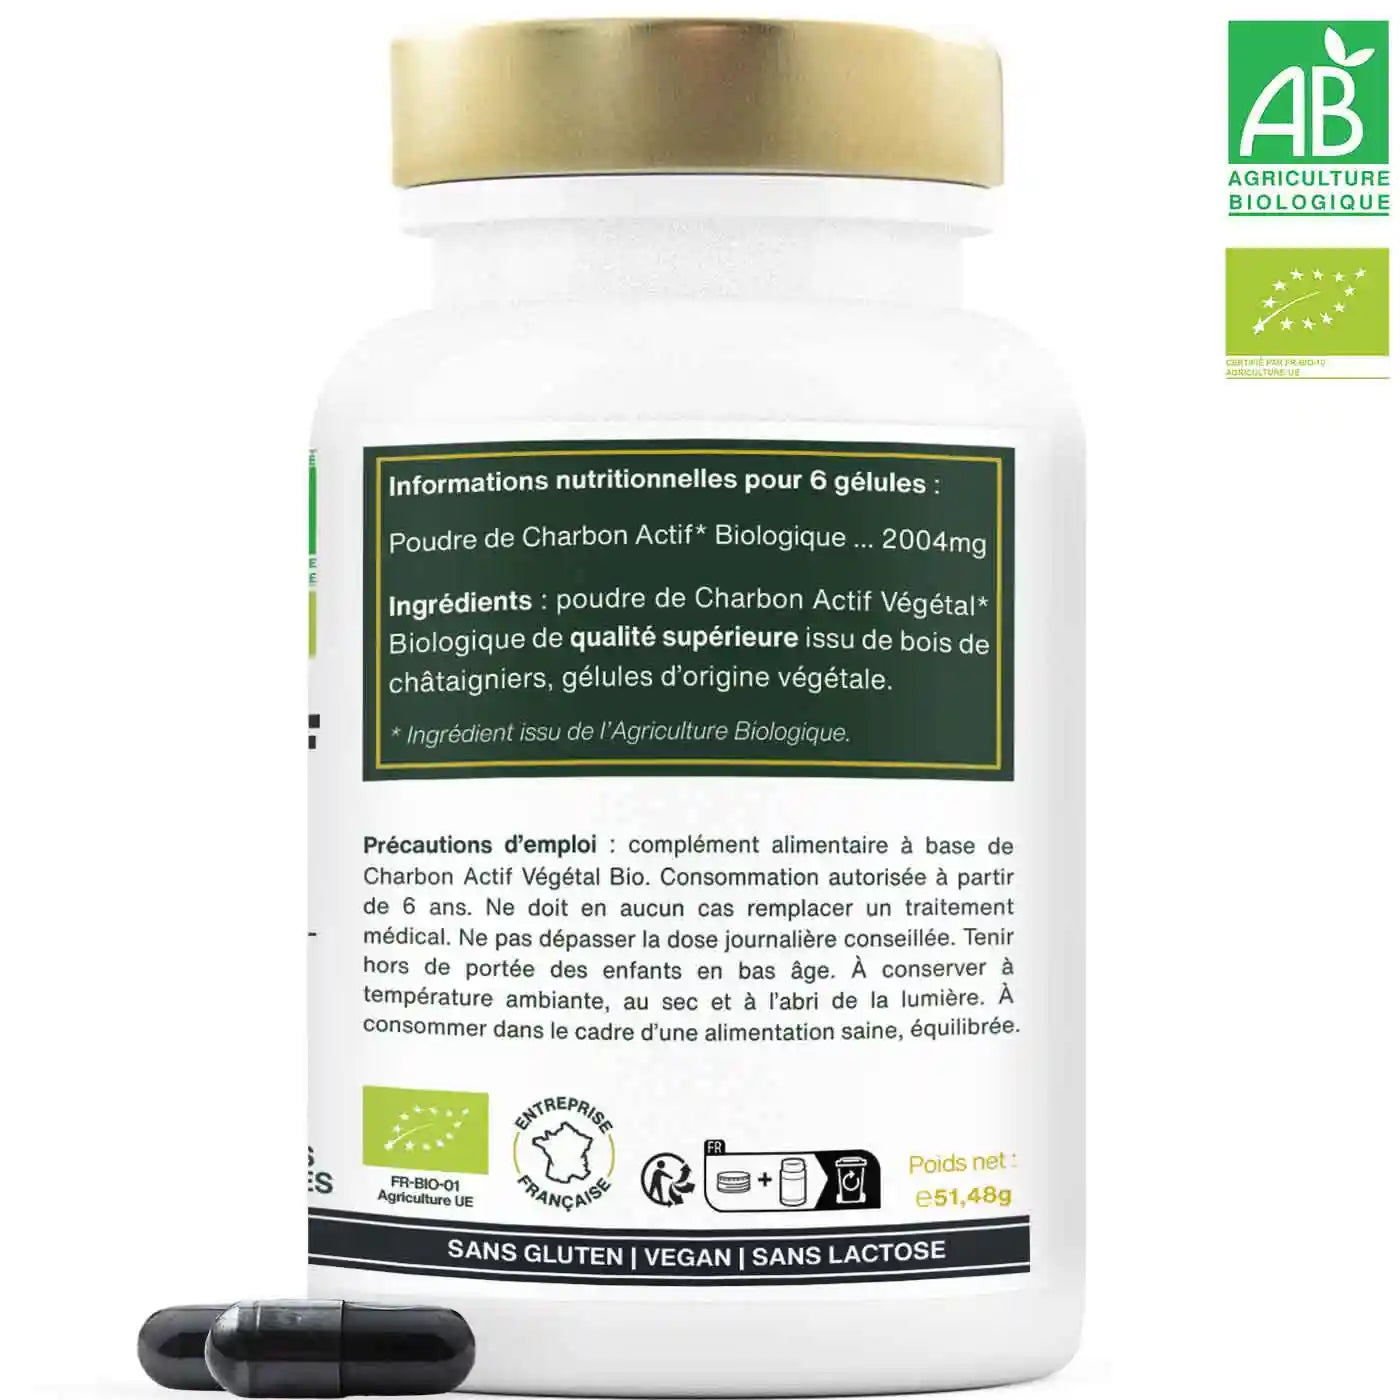 Charbon actif vegetal bio gelules  amoseeds specialiste des super aliments bio